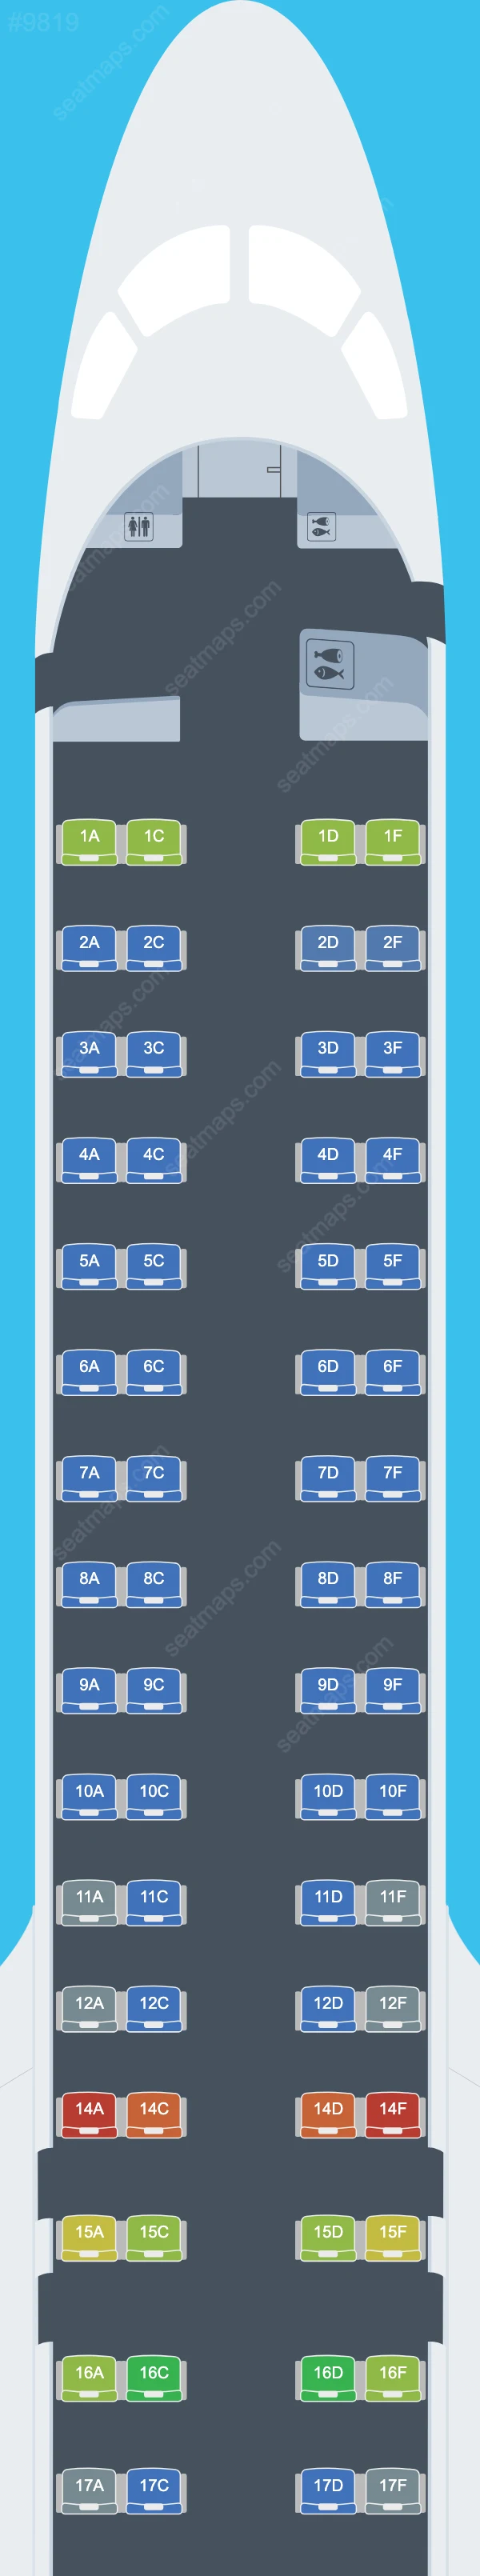 Схема салона Binter Canarias в самолете Embraer E195-E2 E195 E2